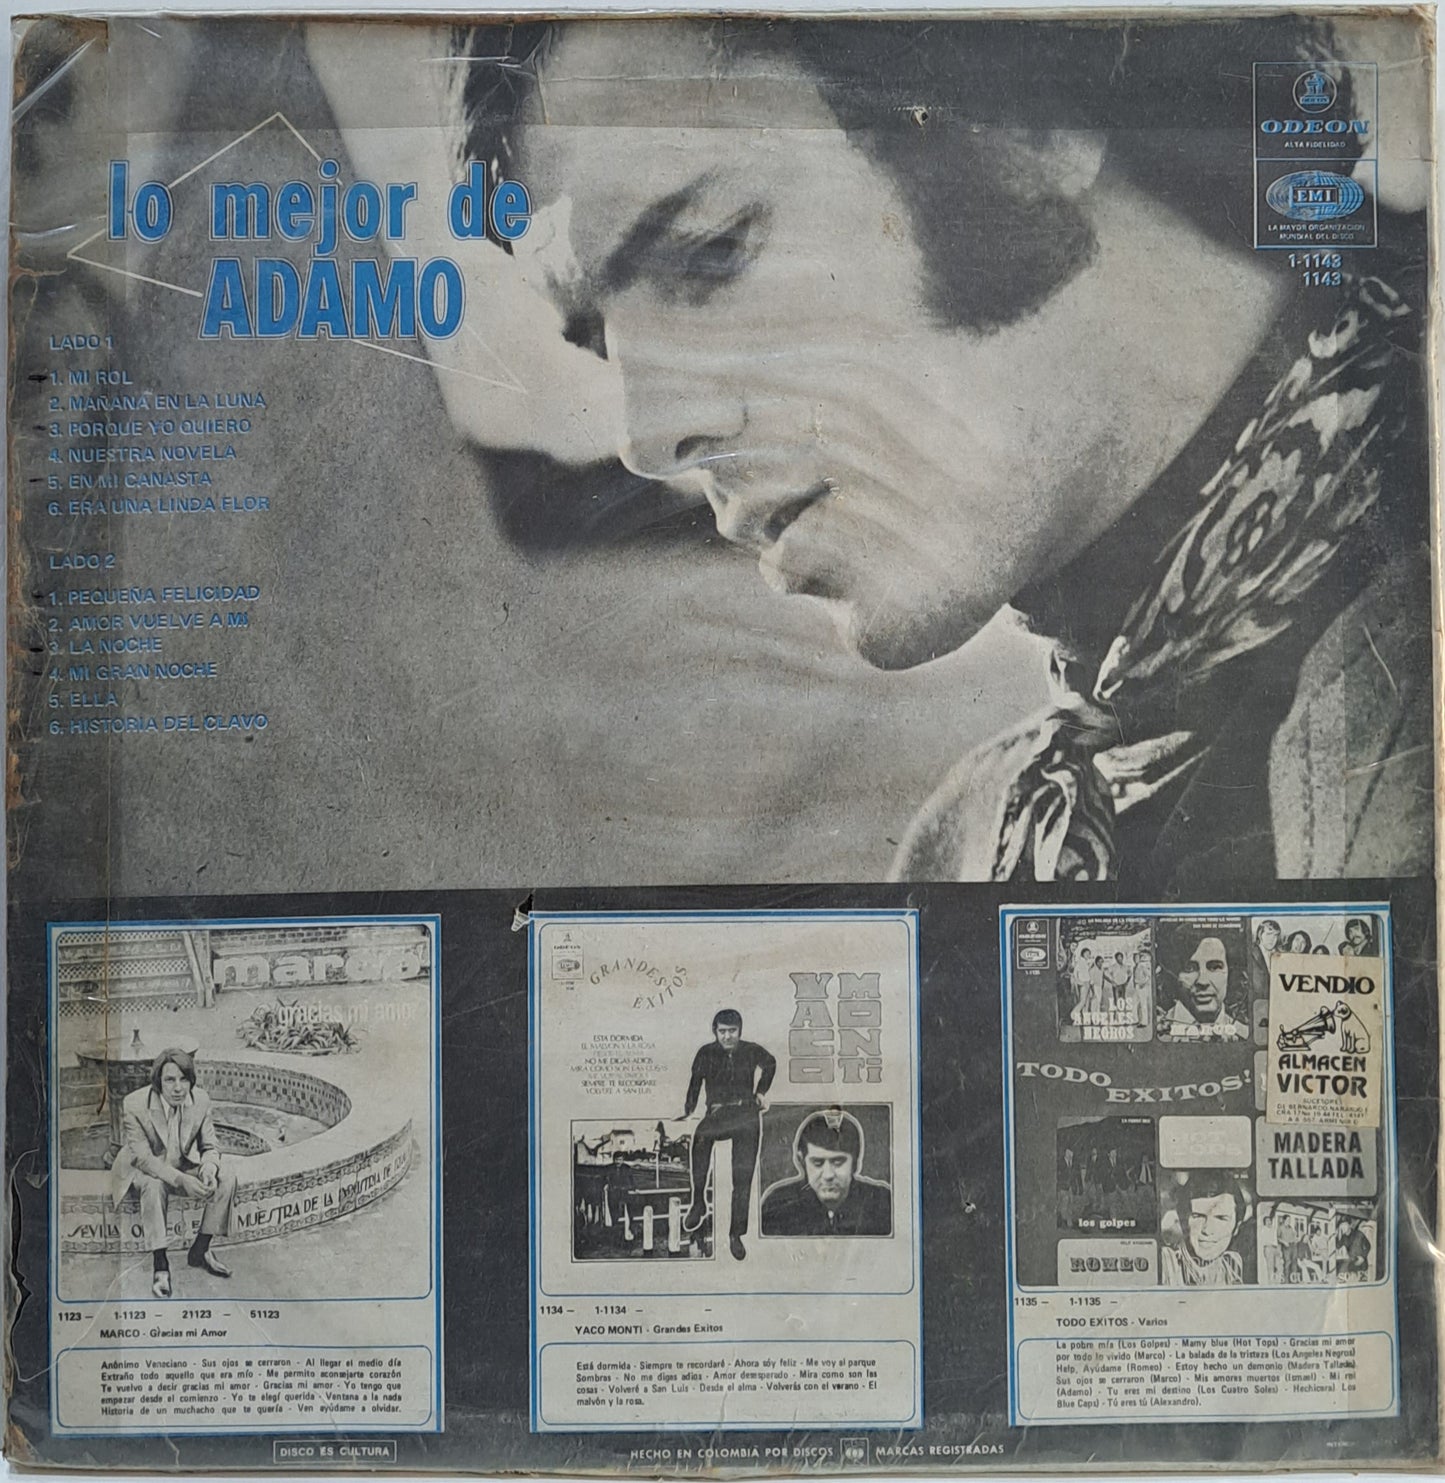 ADAMO - LO MEJOR DE  LP